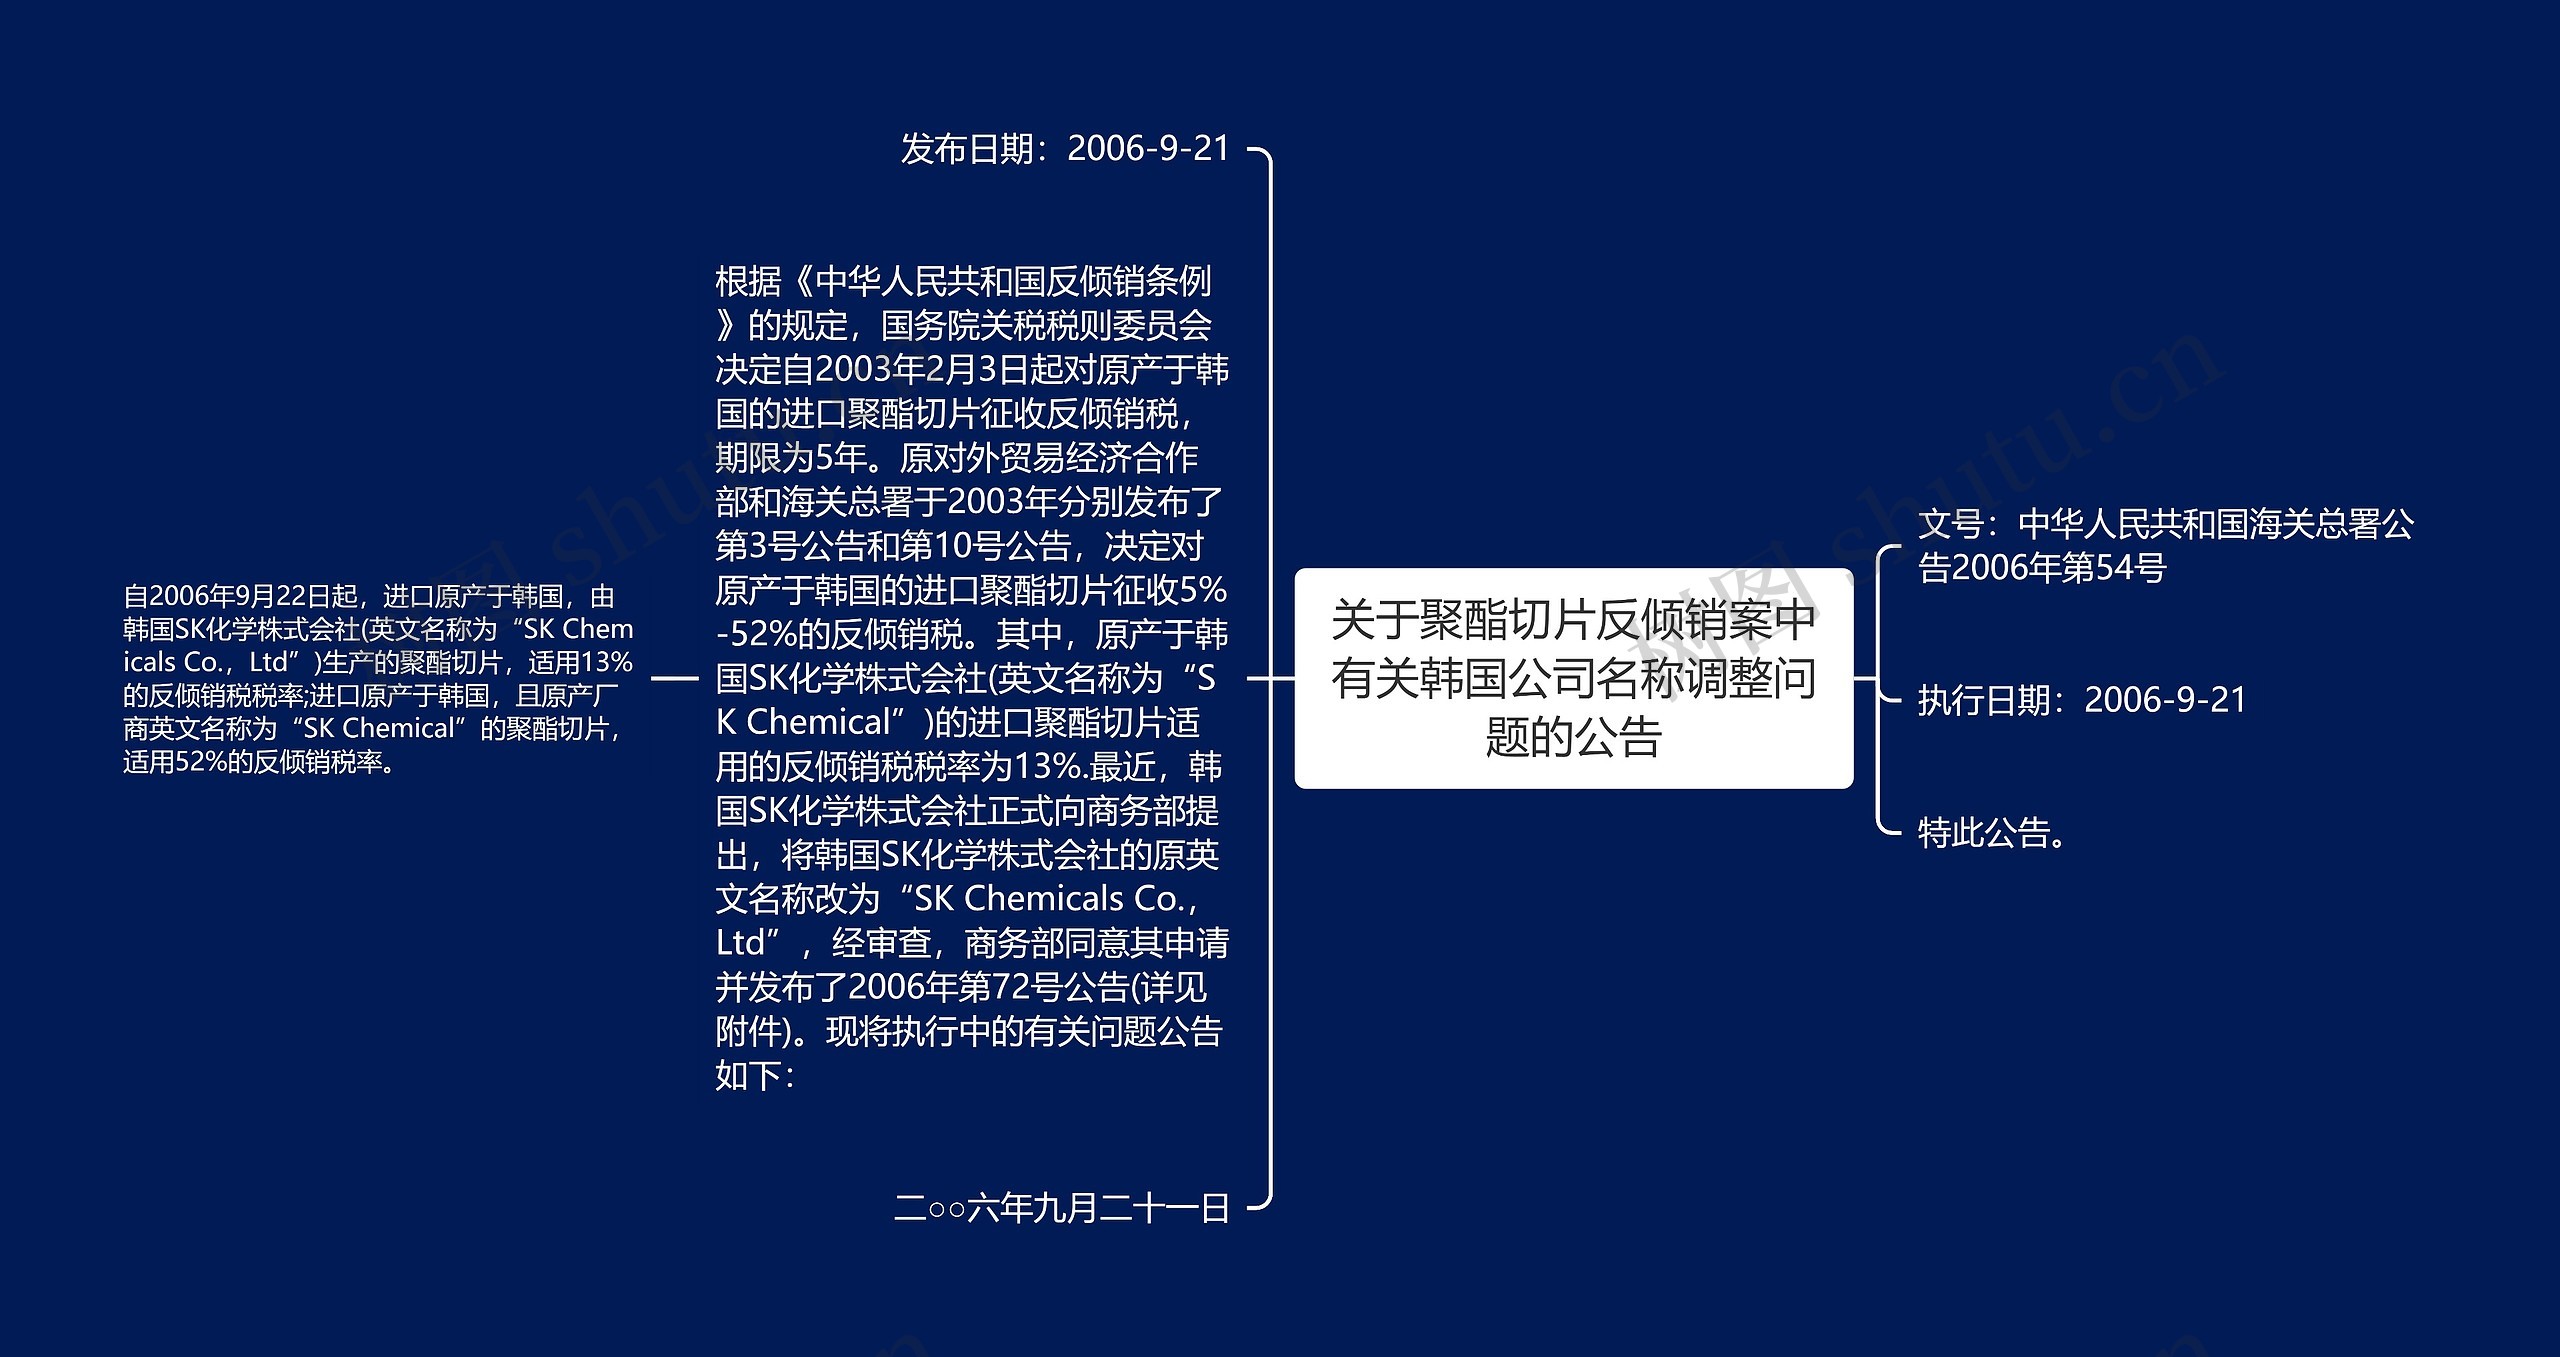 关于聚酯切片反倾销案中有关韩国公司名称调整问题的公告思维导图